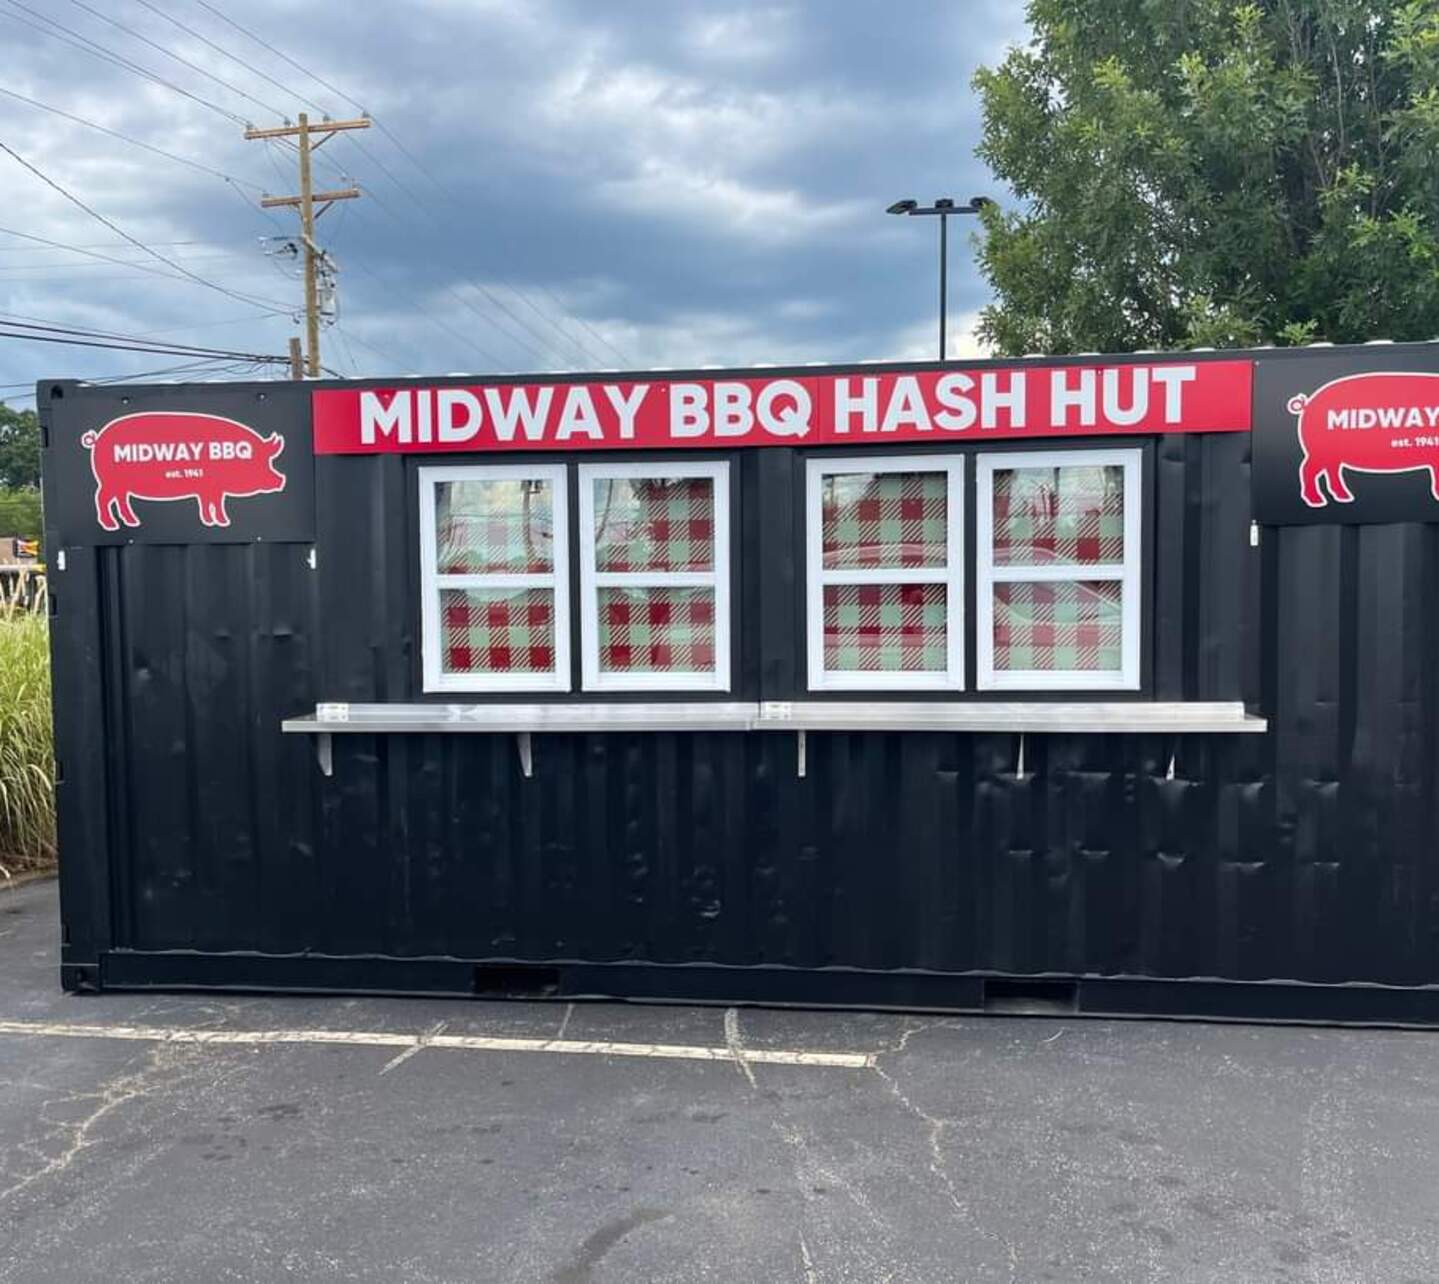 Midway BBQ Hash Hut